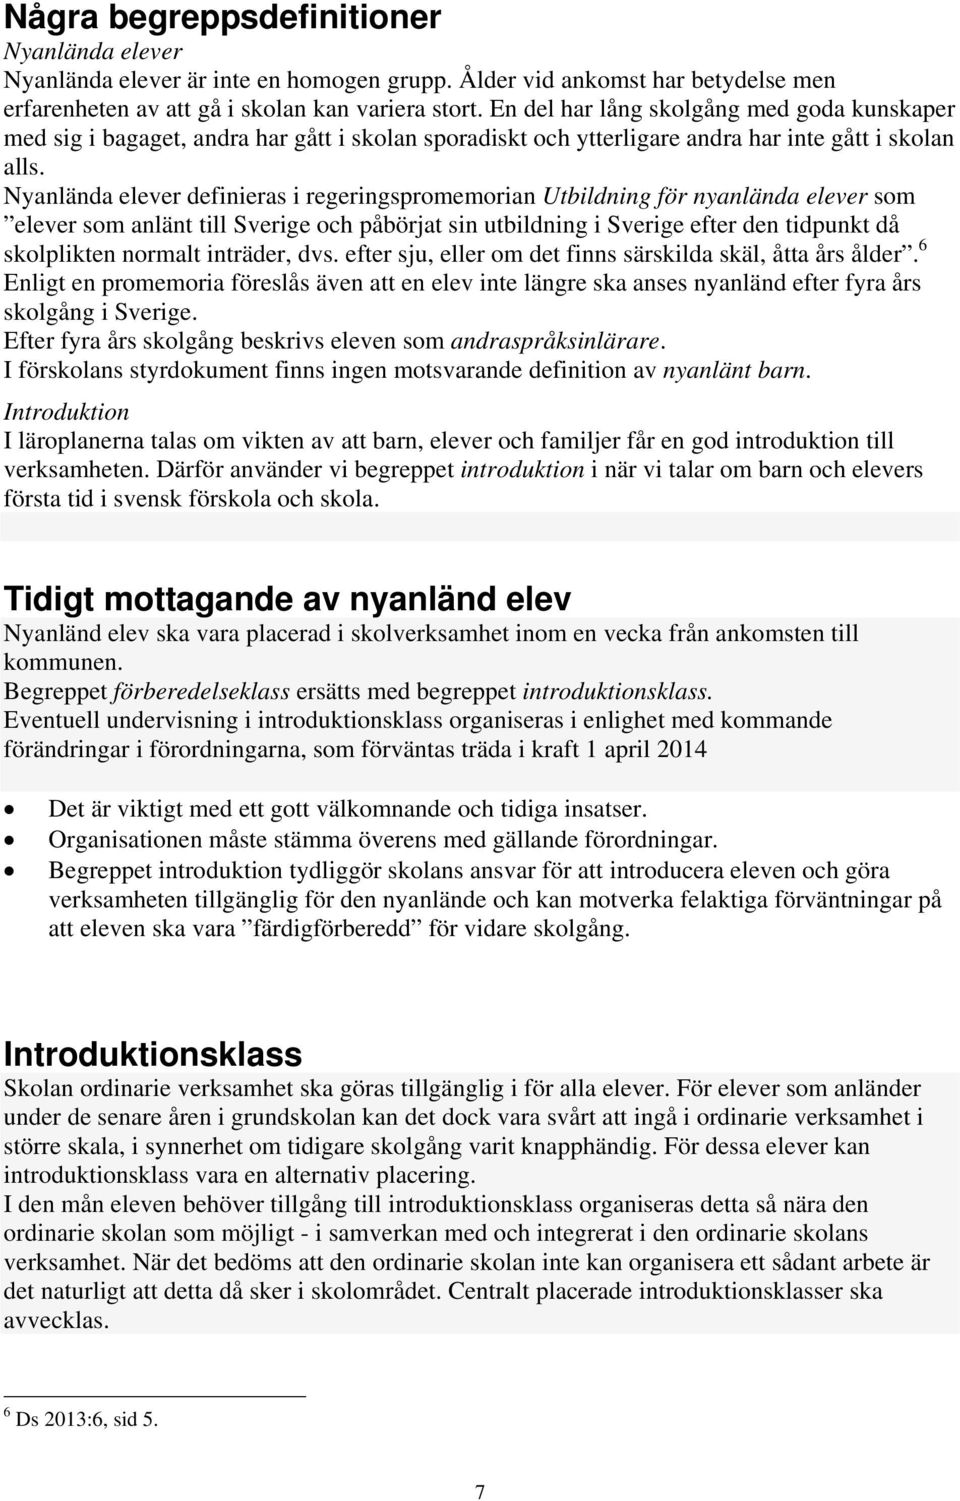 Nyanlända elever definieras i regeringspromemorian Utbildning för nyanlända elever som elever som anlänt till Sverige och påbörjat sin utbildning i Sverige efter den tidpunkt då skolplikten normalt